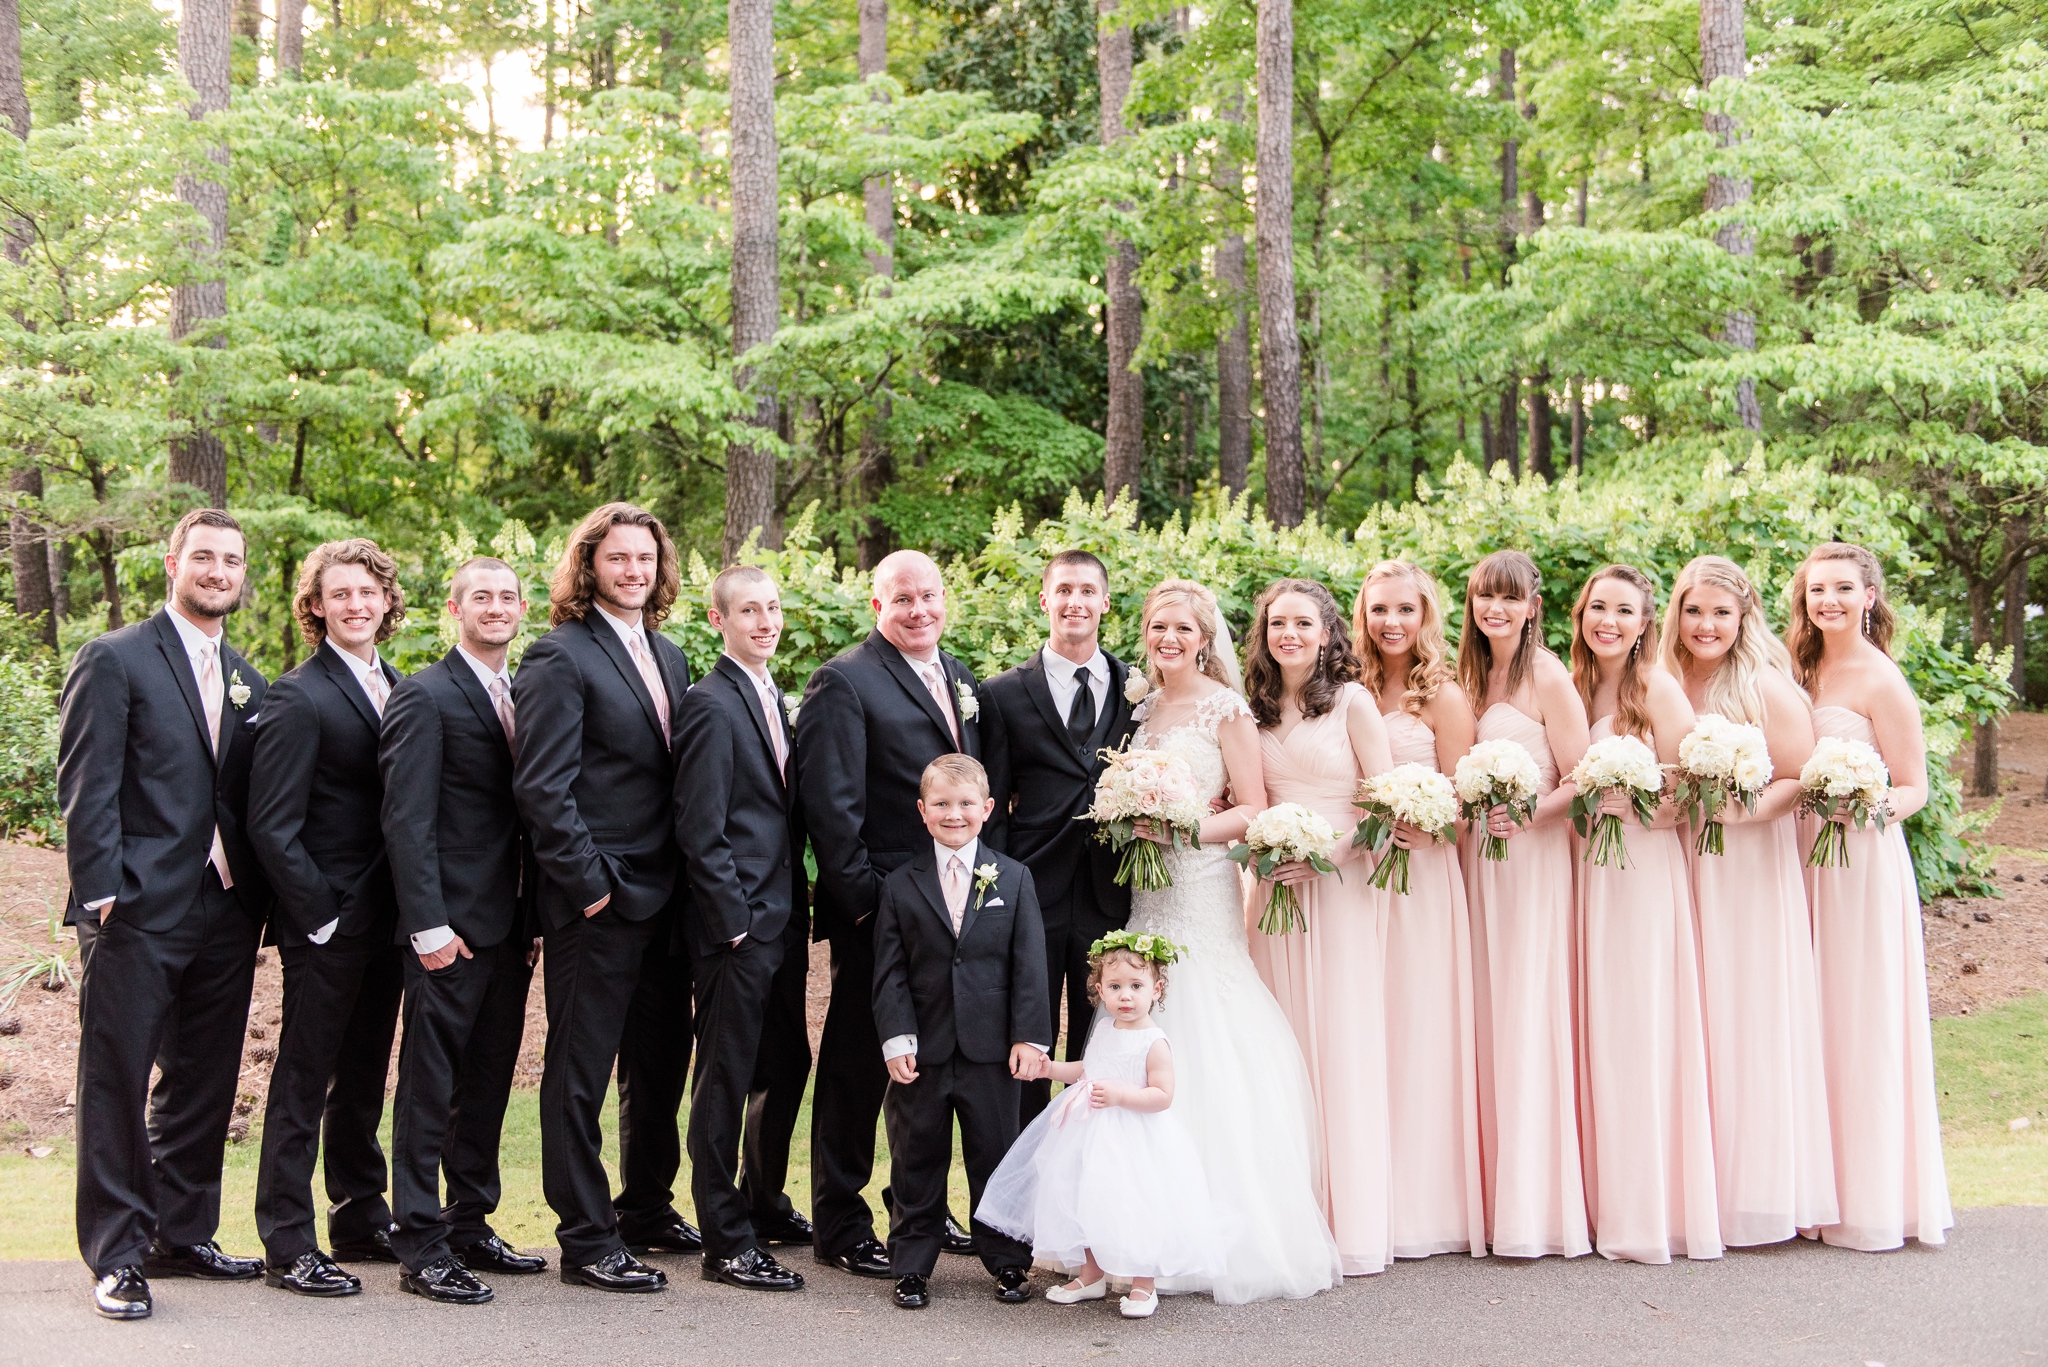 Aldridge Garden Hoover Alabama Blush Spring Wedding | Birmingham Alabama Wedding Photographers_0035.jpg